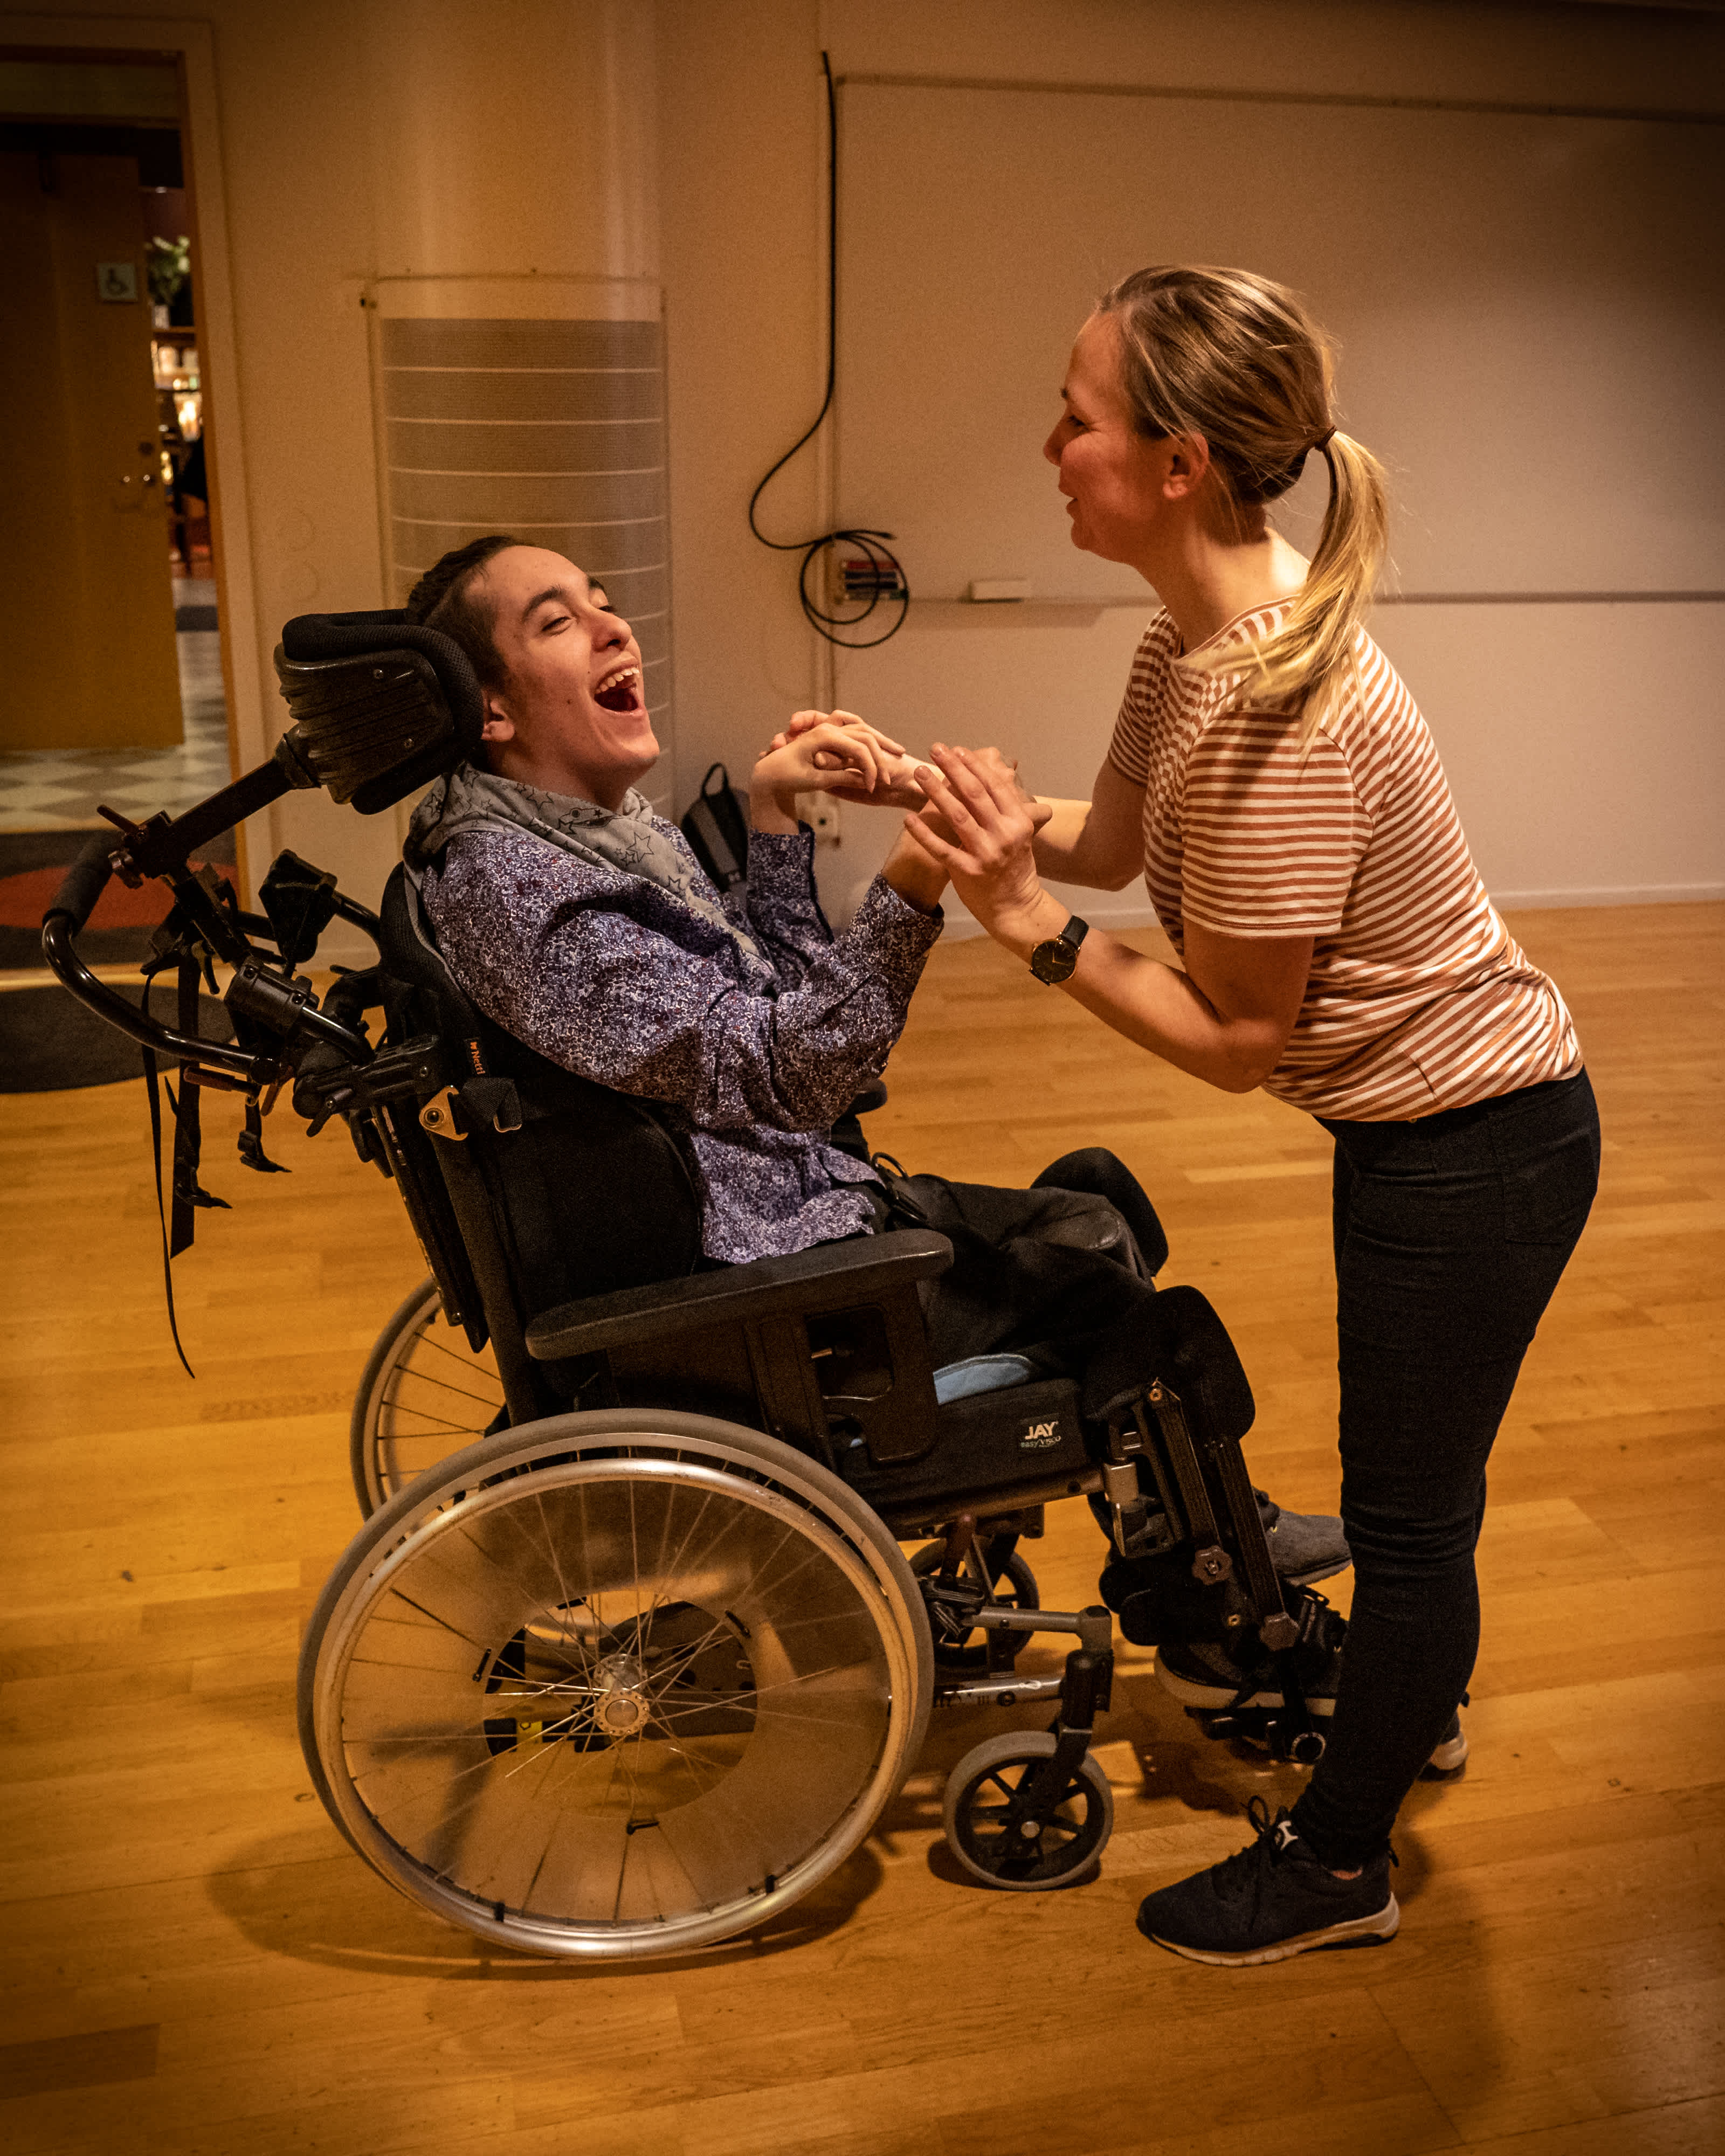 En person i rullstol dansar med en person utan rullstol.